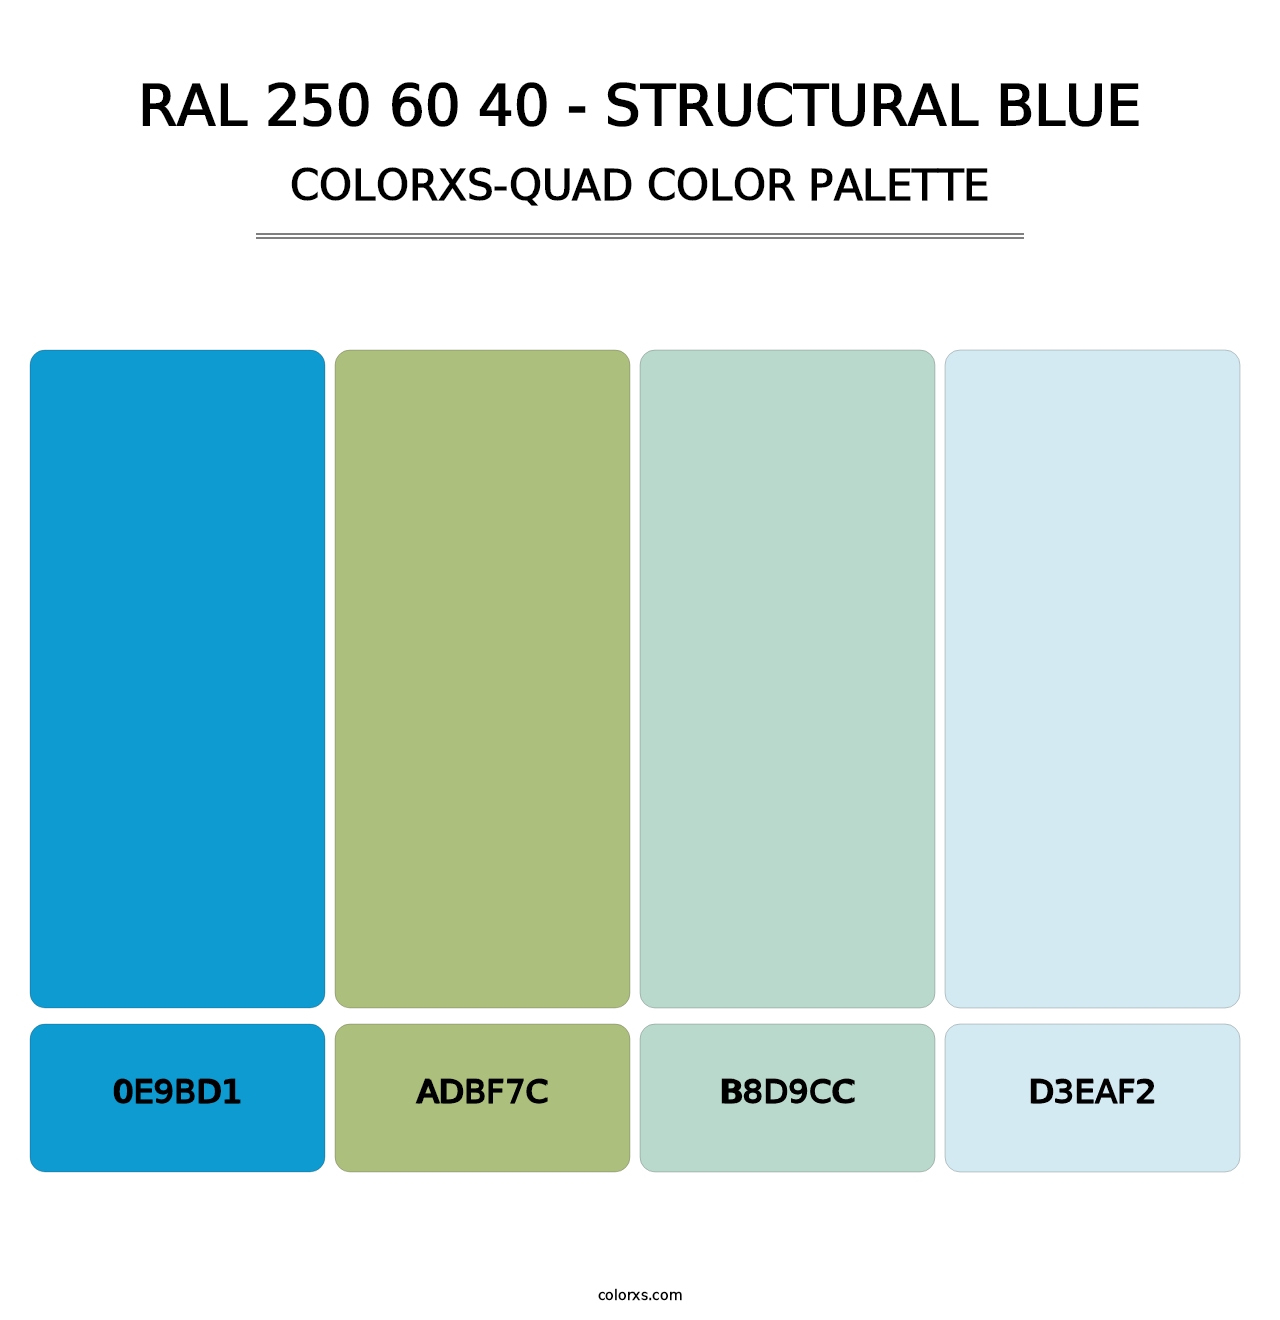 RAL 250 60 40 - Structural Blue - Colorxs Quad Palette